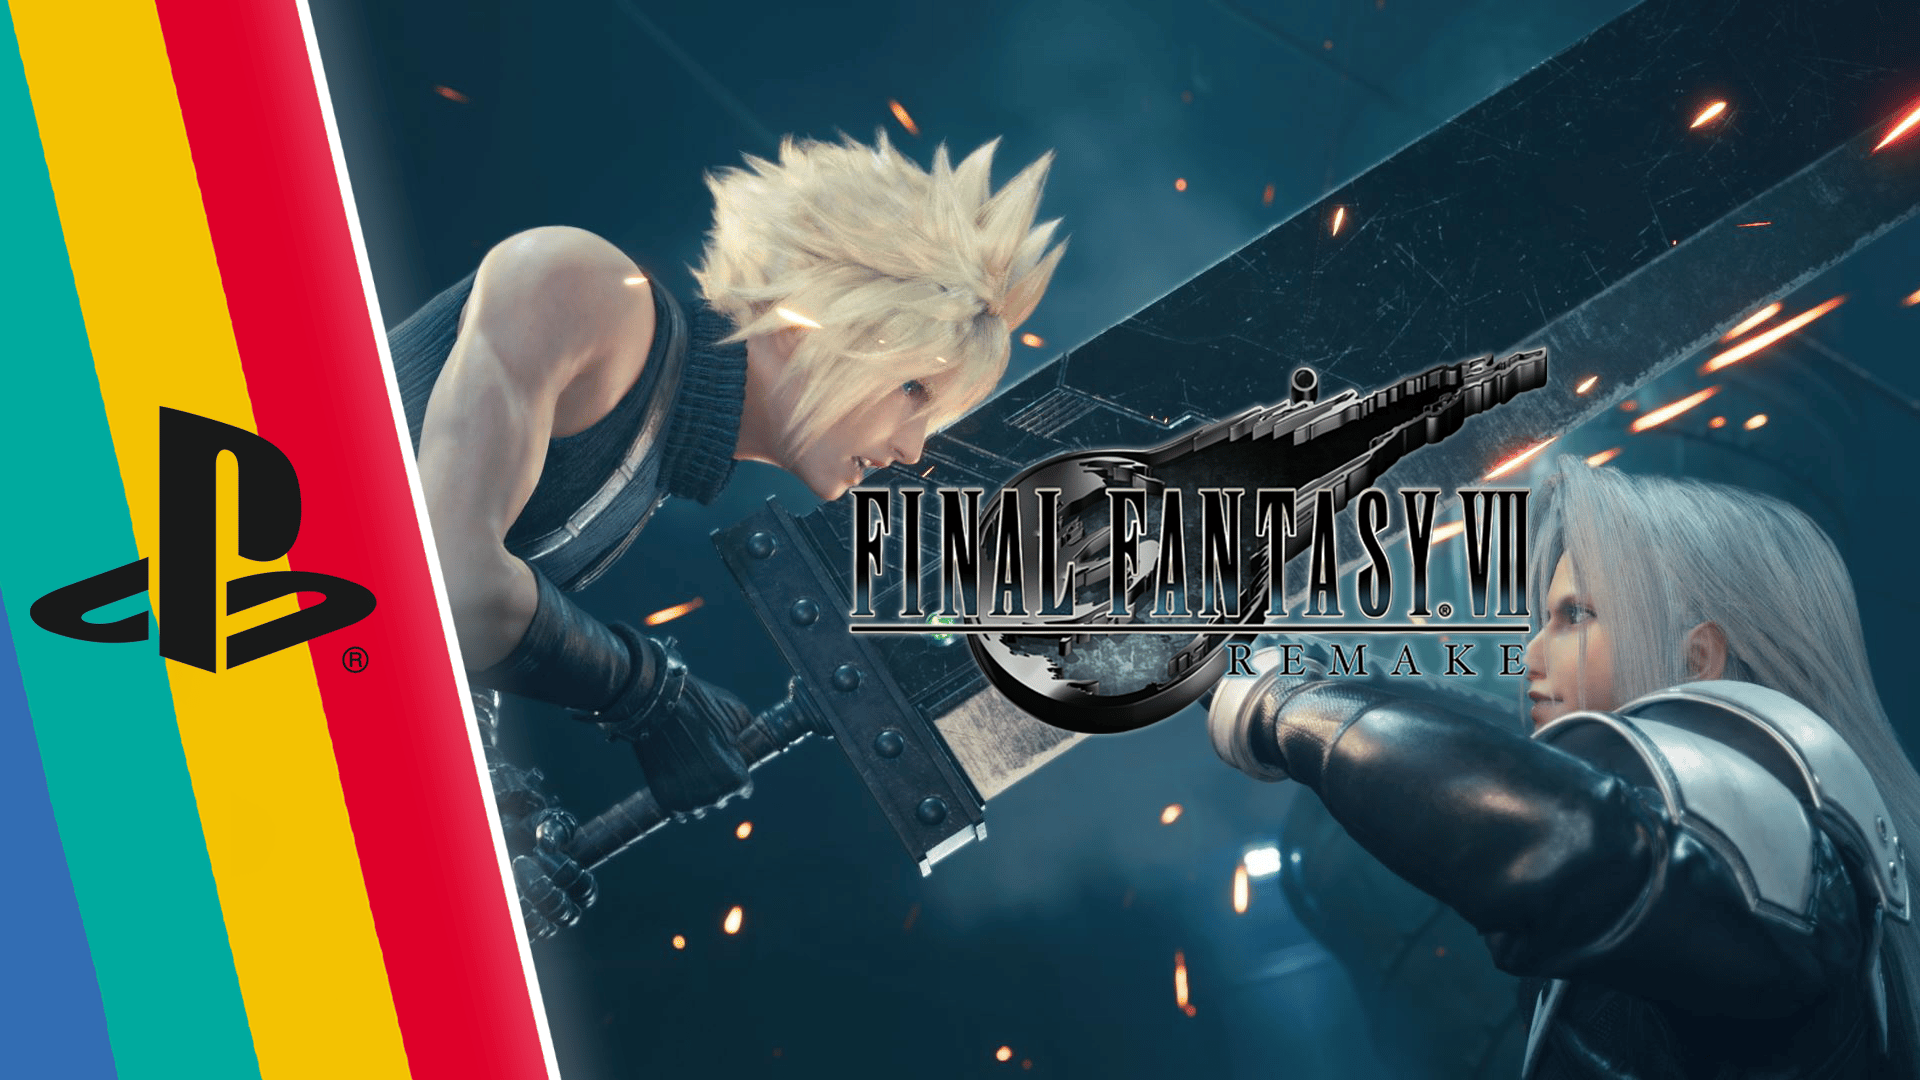 Critique vintage : Final Fantasy VII Remake, une réinvention audacieuse